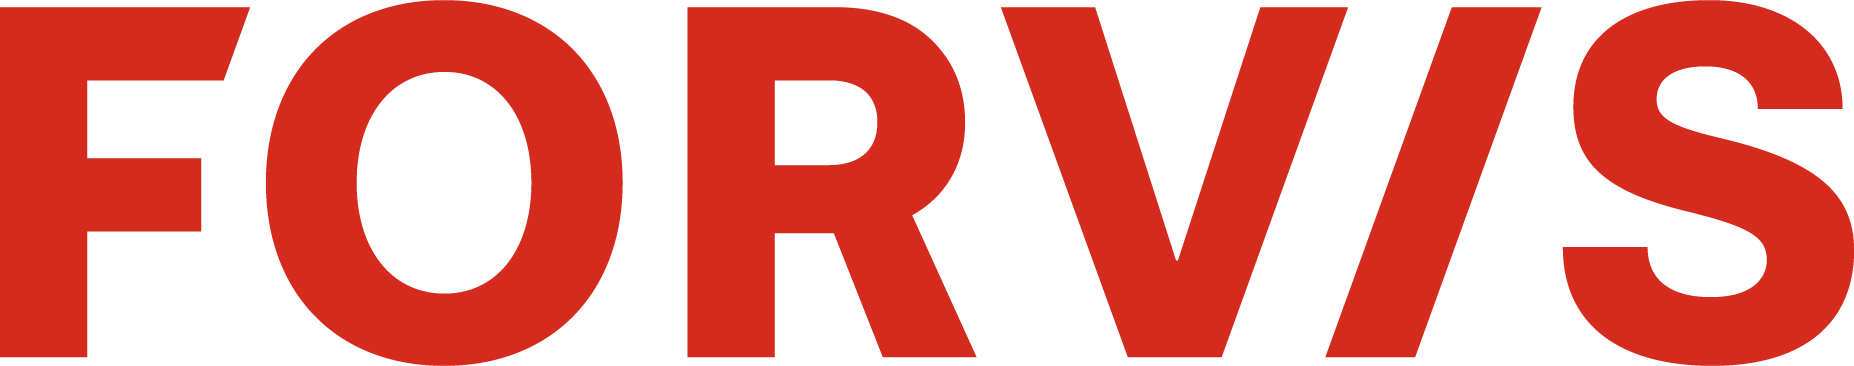 FORVIS logo (opens in new window)